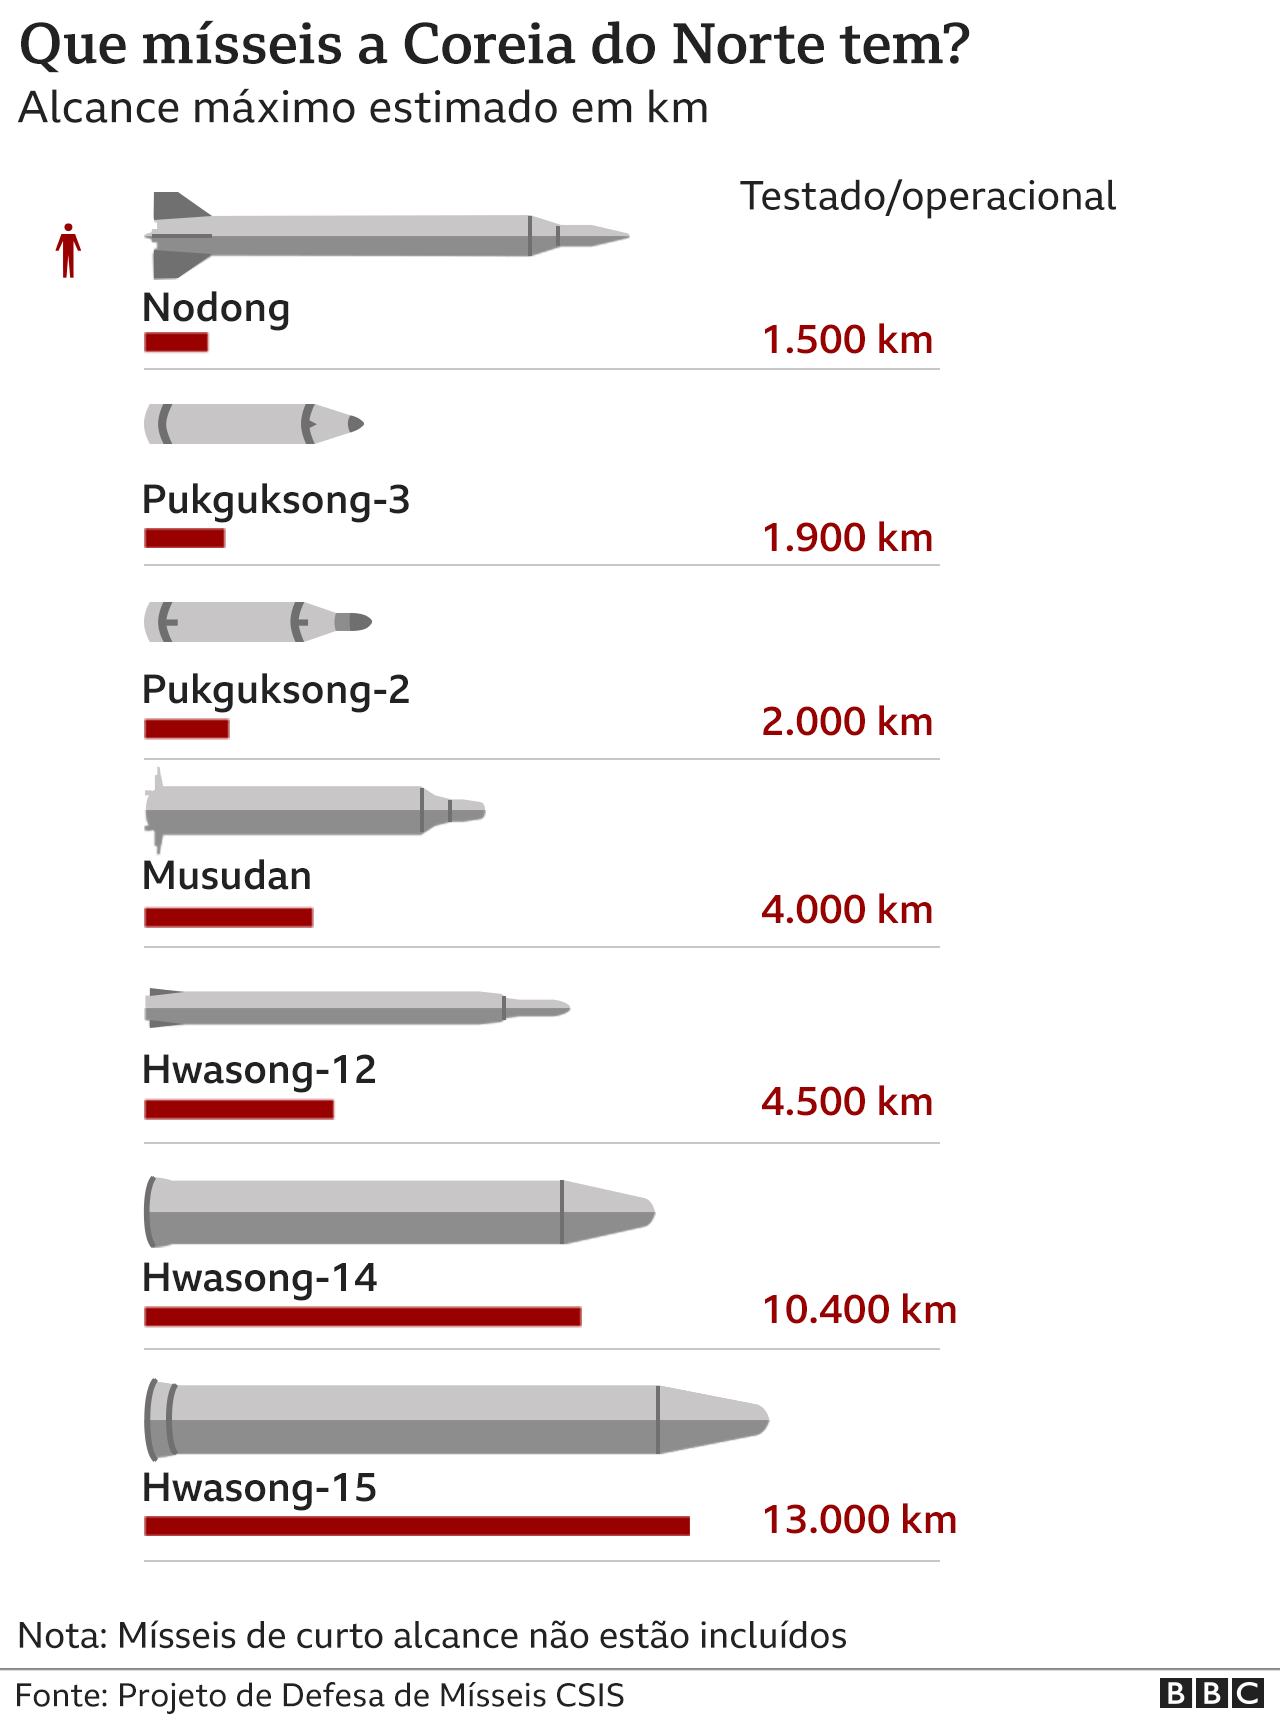 Infográfico faz comparação em relação ao alcance dos mísseis em poder da Coreia do Norte